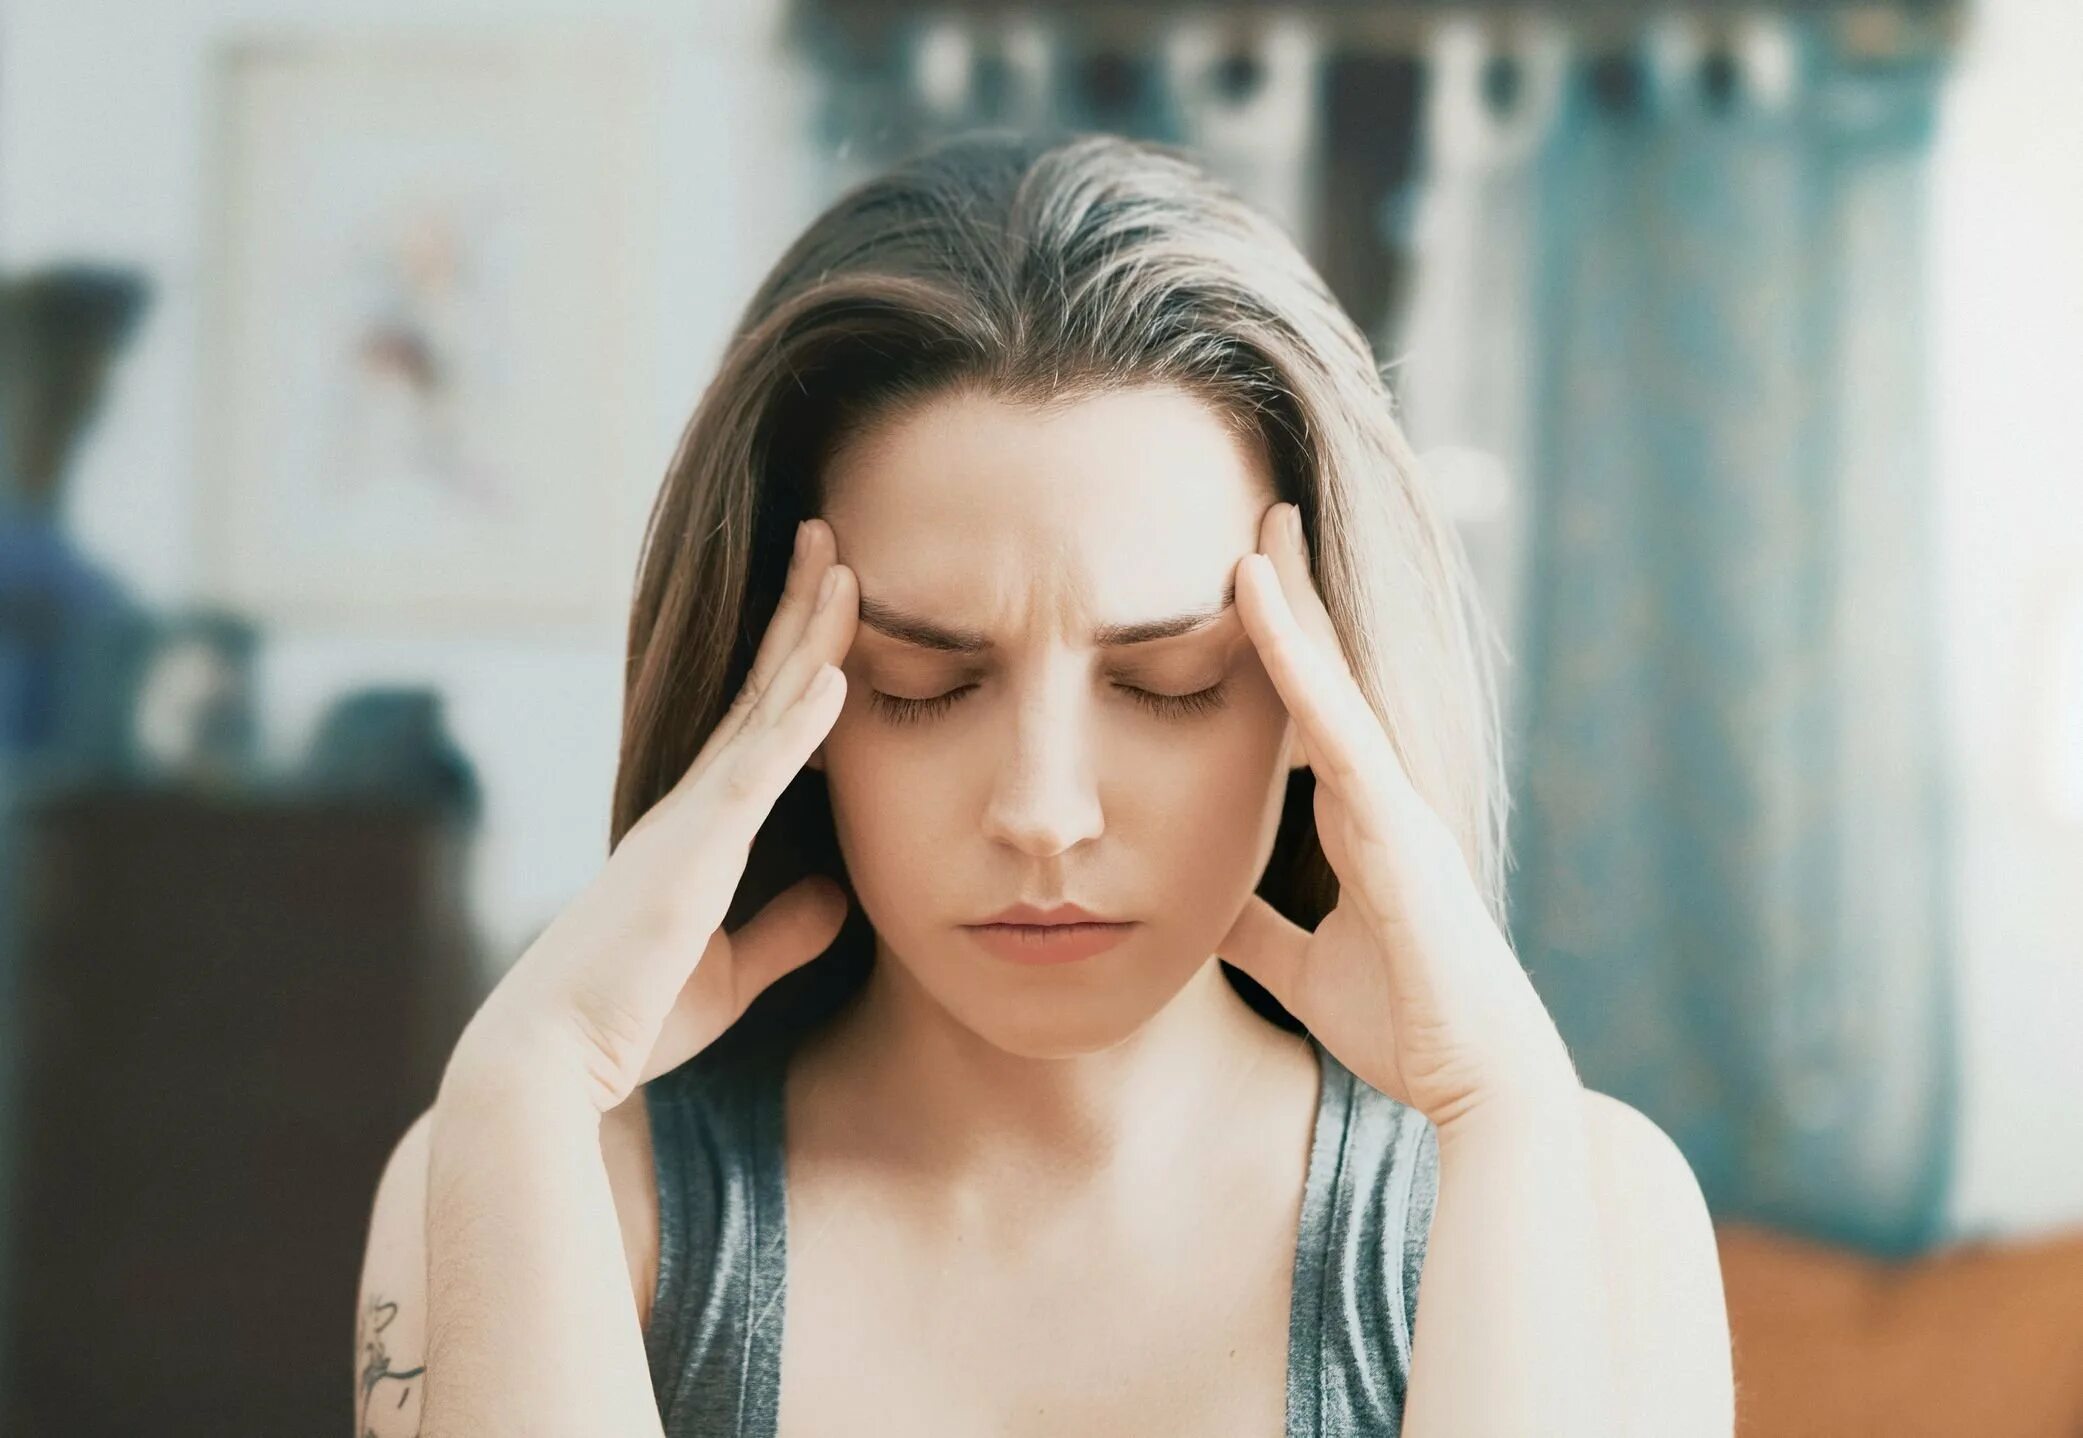 Депрессия навязчивые. Женщина в стрессе. Болит голова. Стресс паника. Лицо женщины в стрессе.